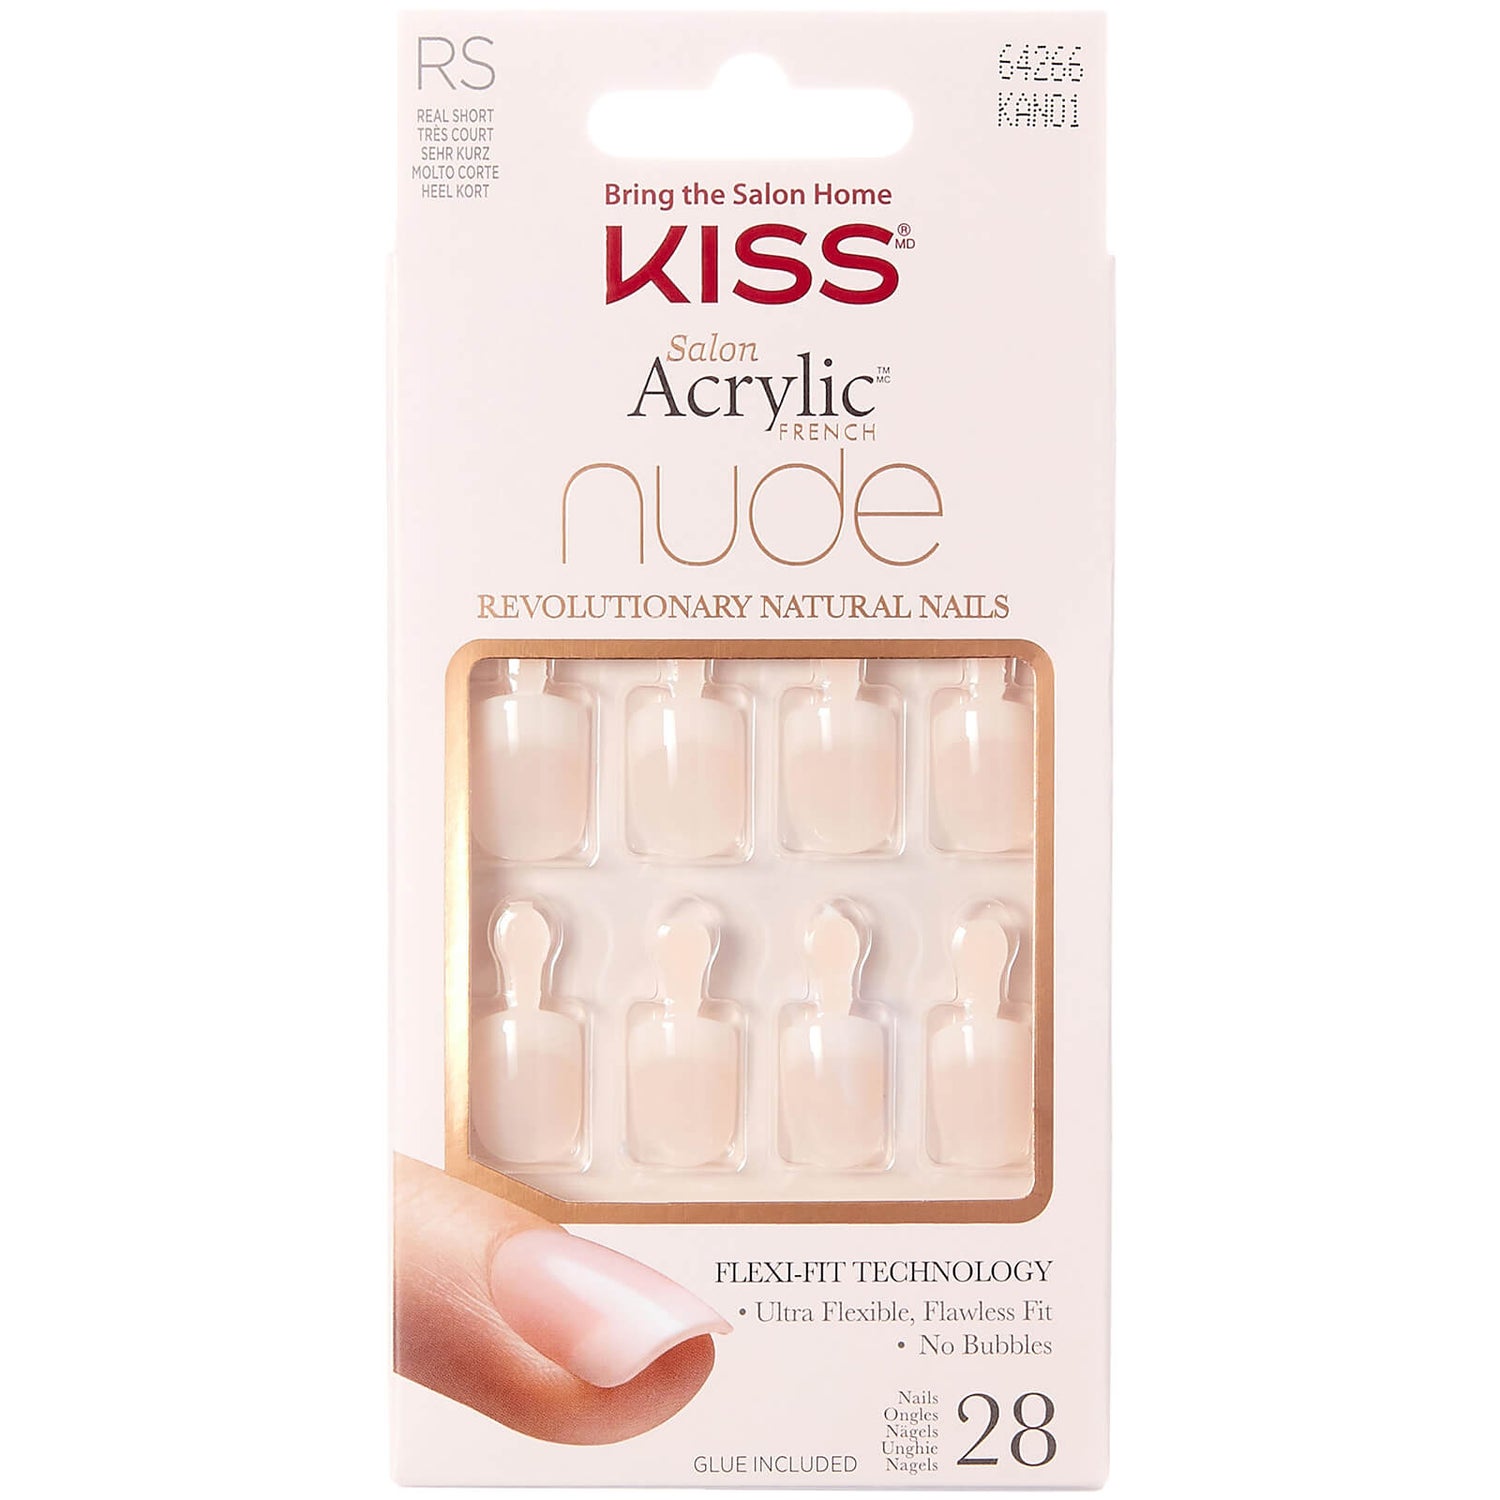 Kiss Salon Acrylic Nude Nails (olika nyanser) – Shade:Nr.f7e7dp||Breathtaking